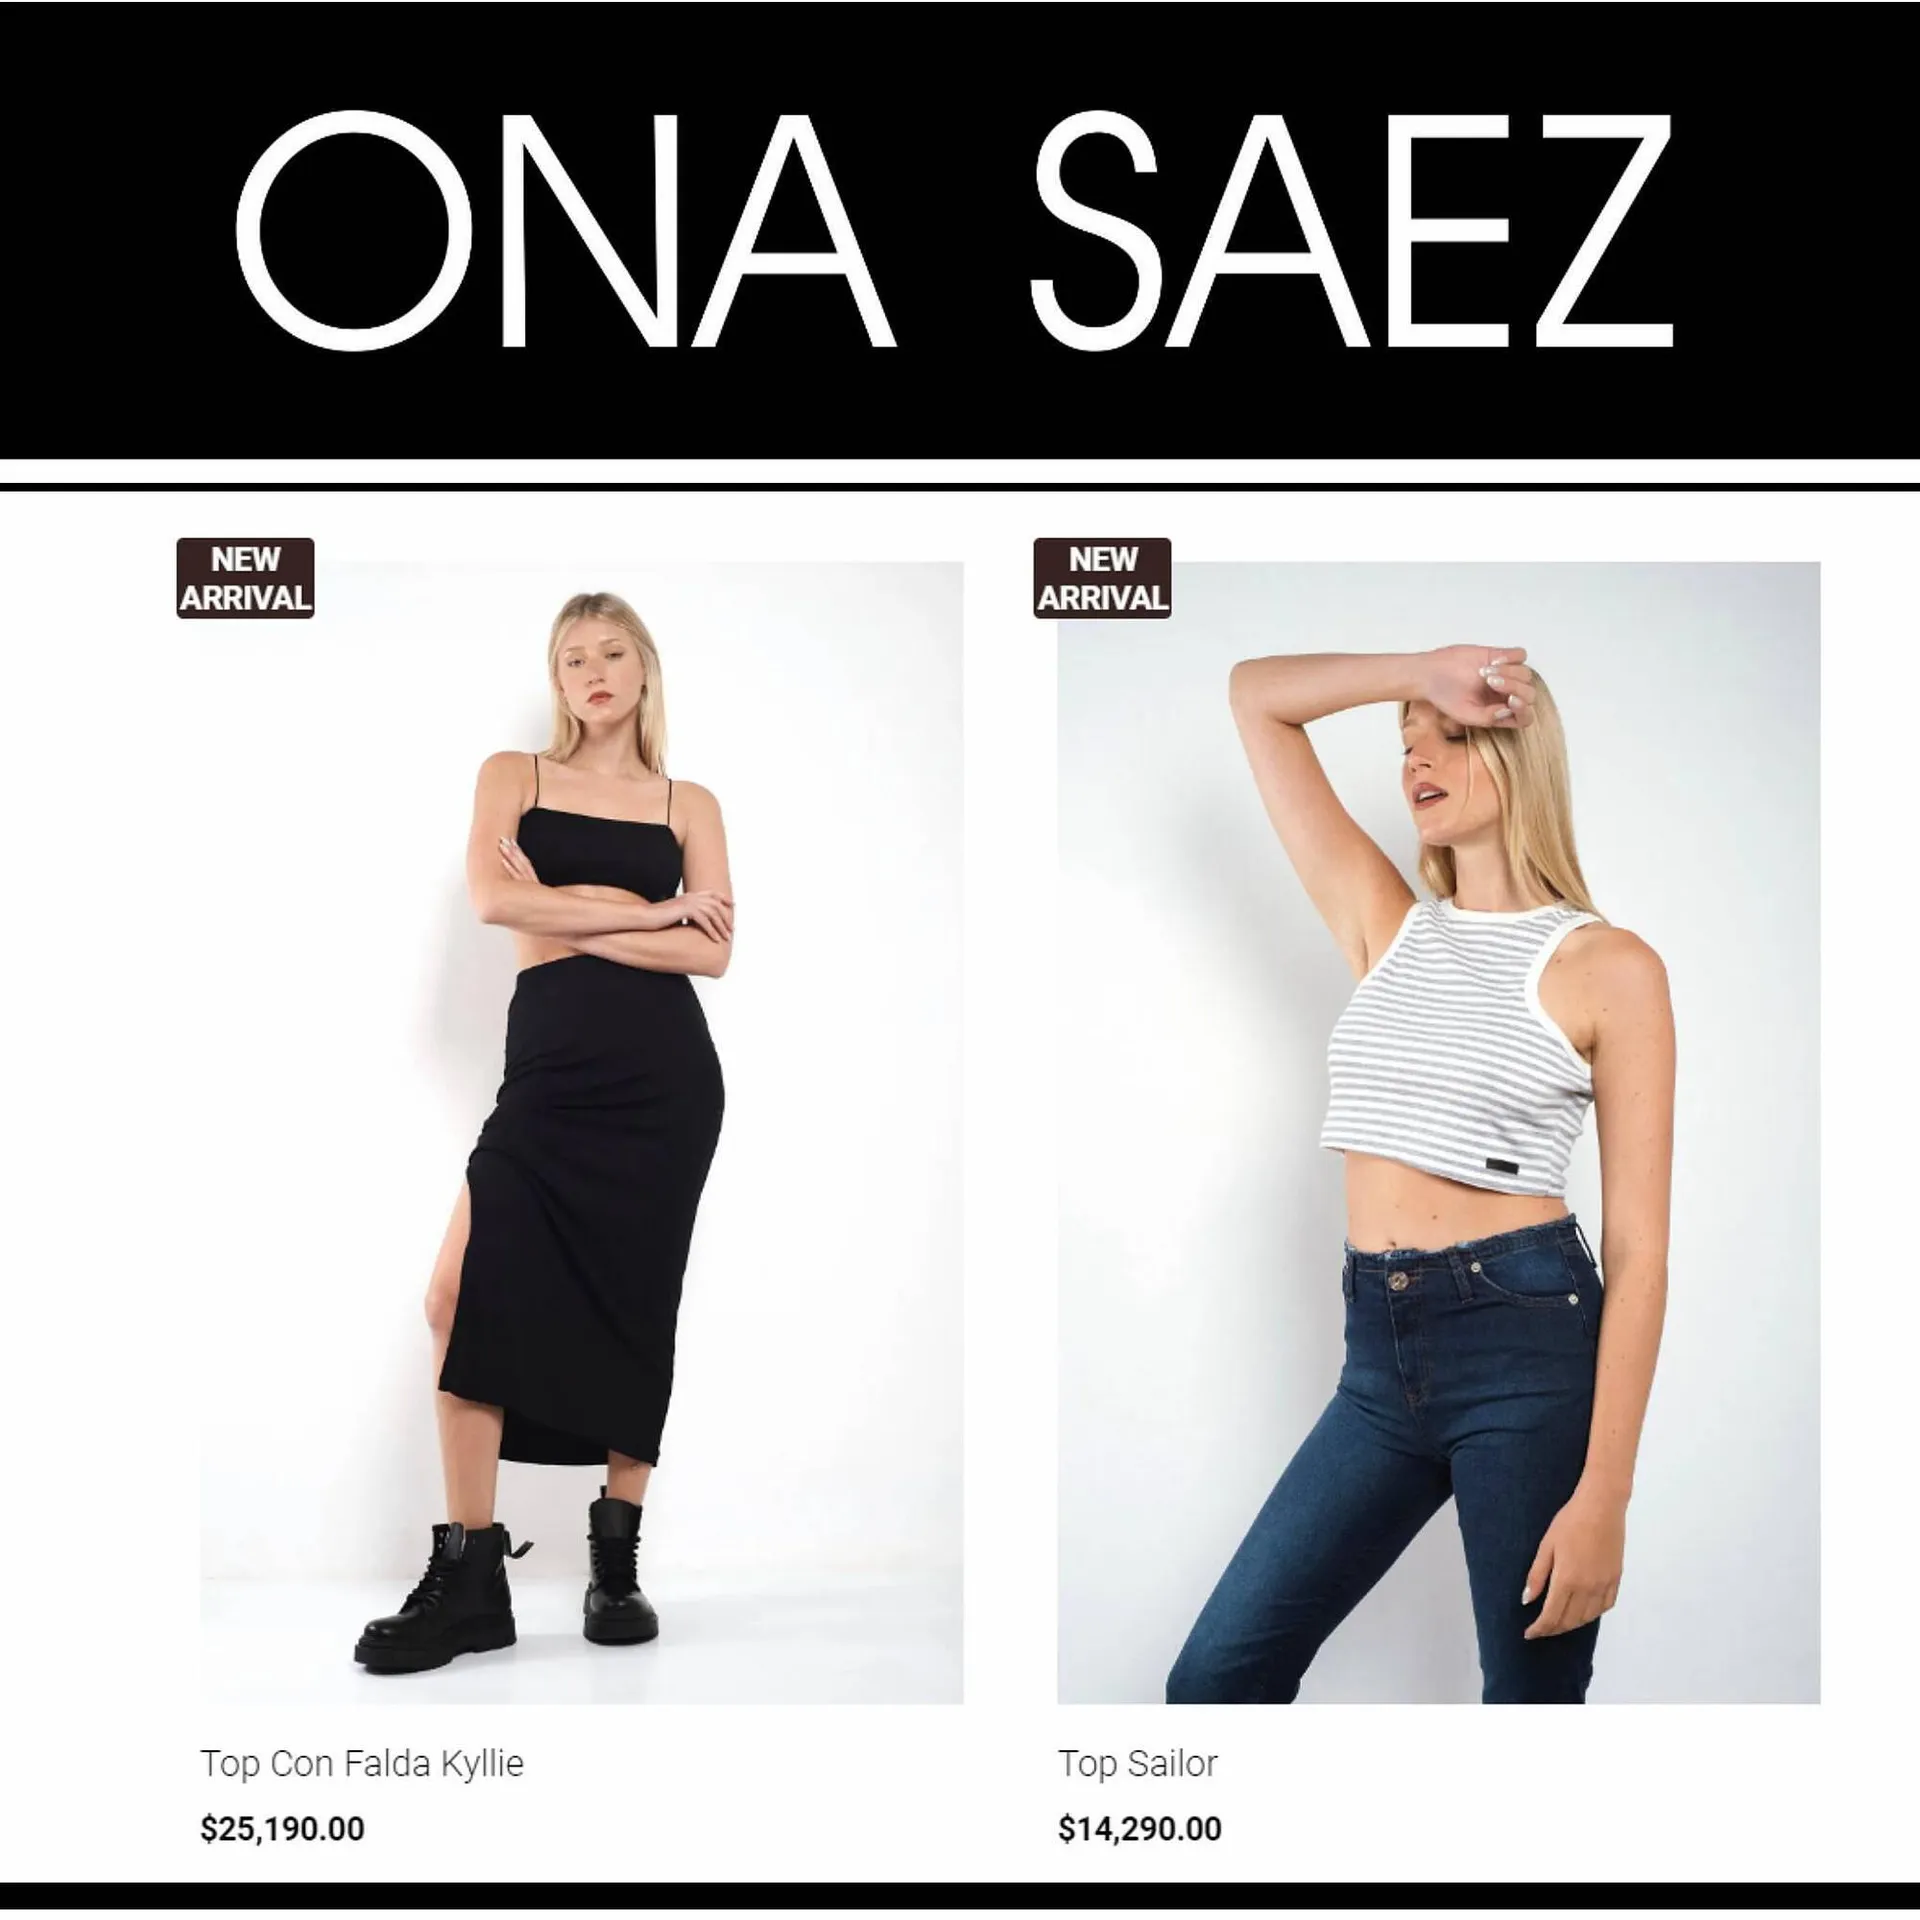 Catálogo Ona Saez - 3